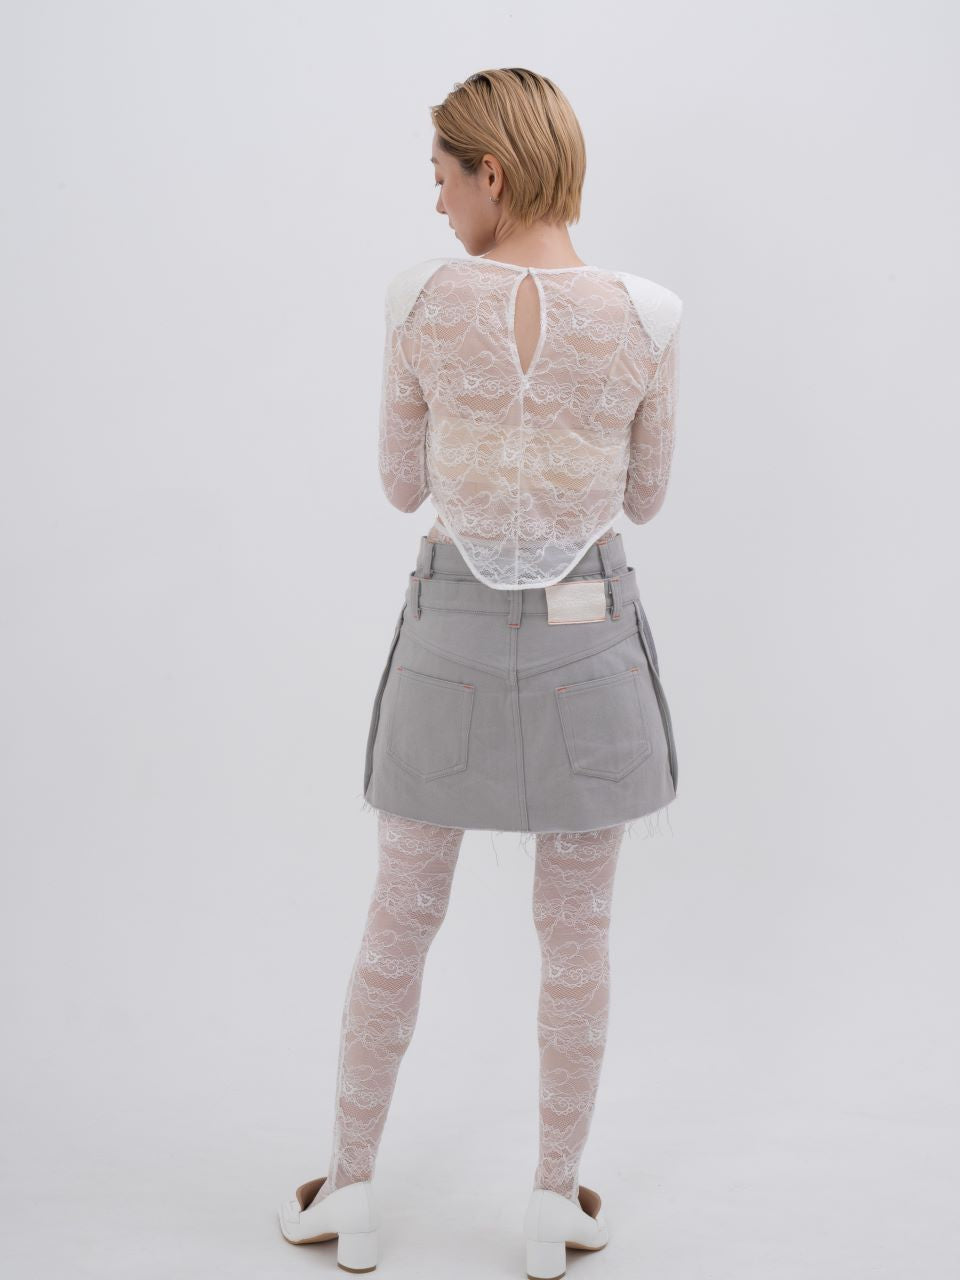 neith./Denim Skirt With Legcover デニムスカートレッグカバー